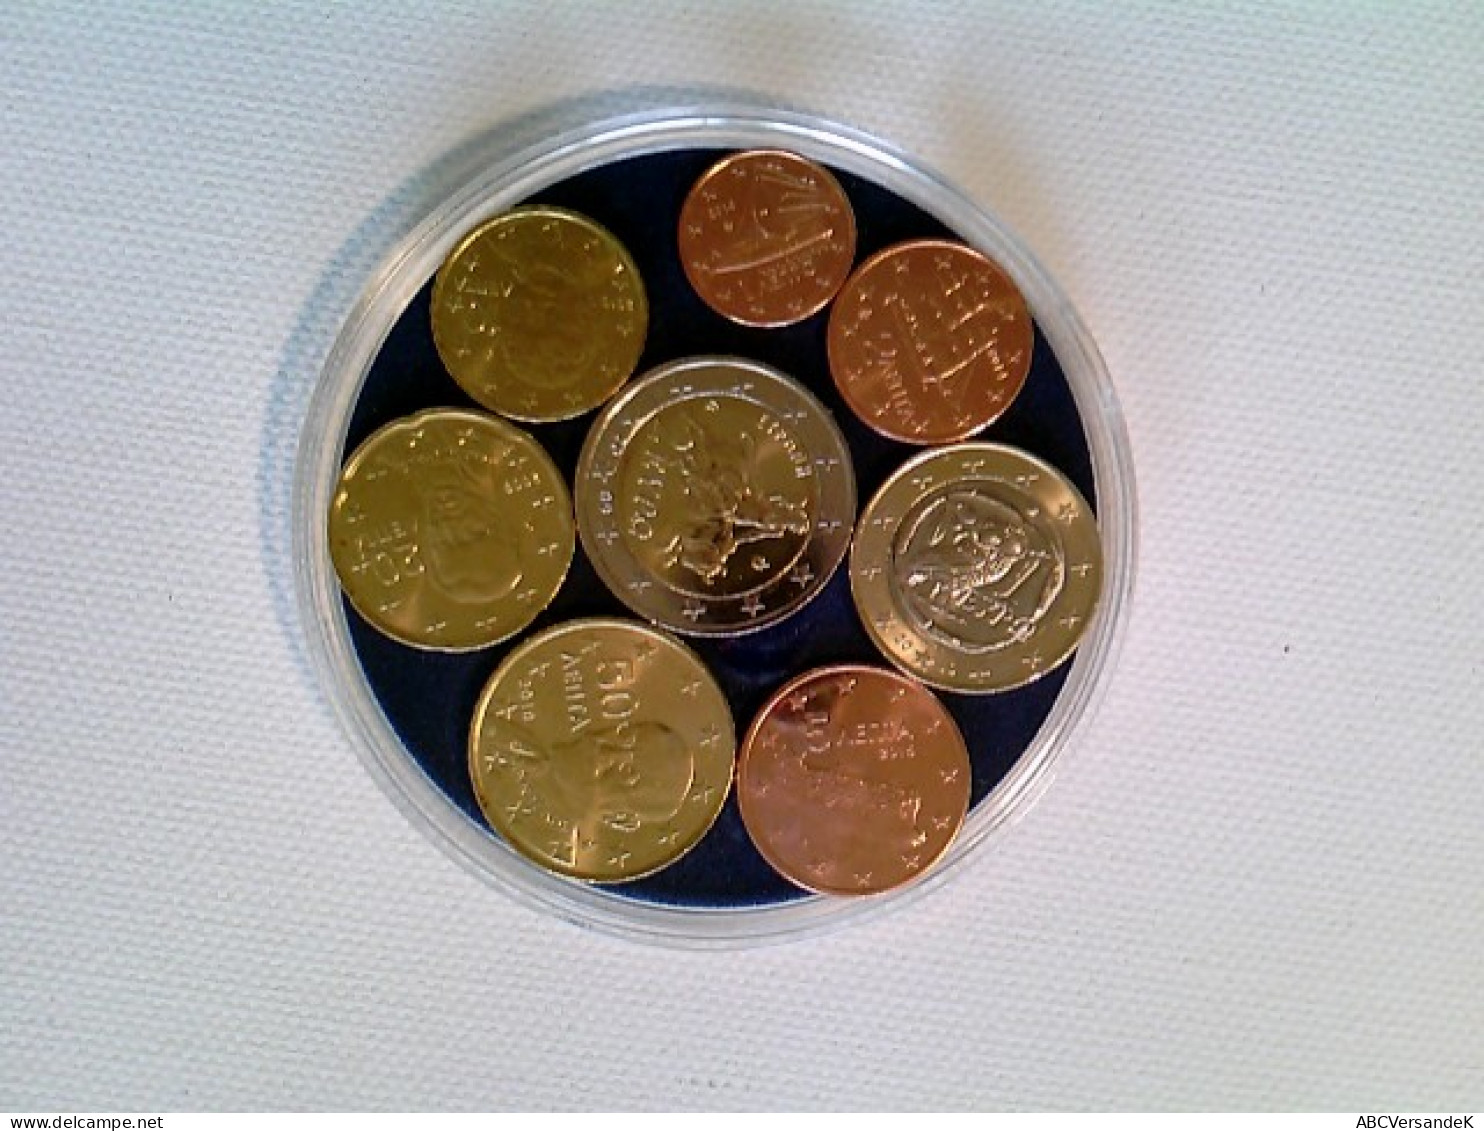 Münzen, Euro-Kursmünzensatz Griechenland, Runde Kapsel - Numismatique